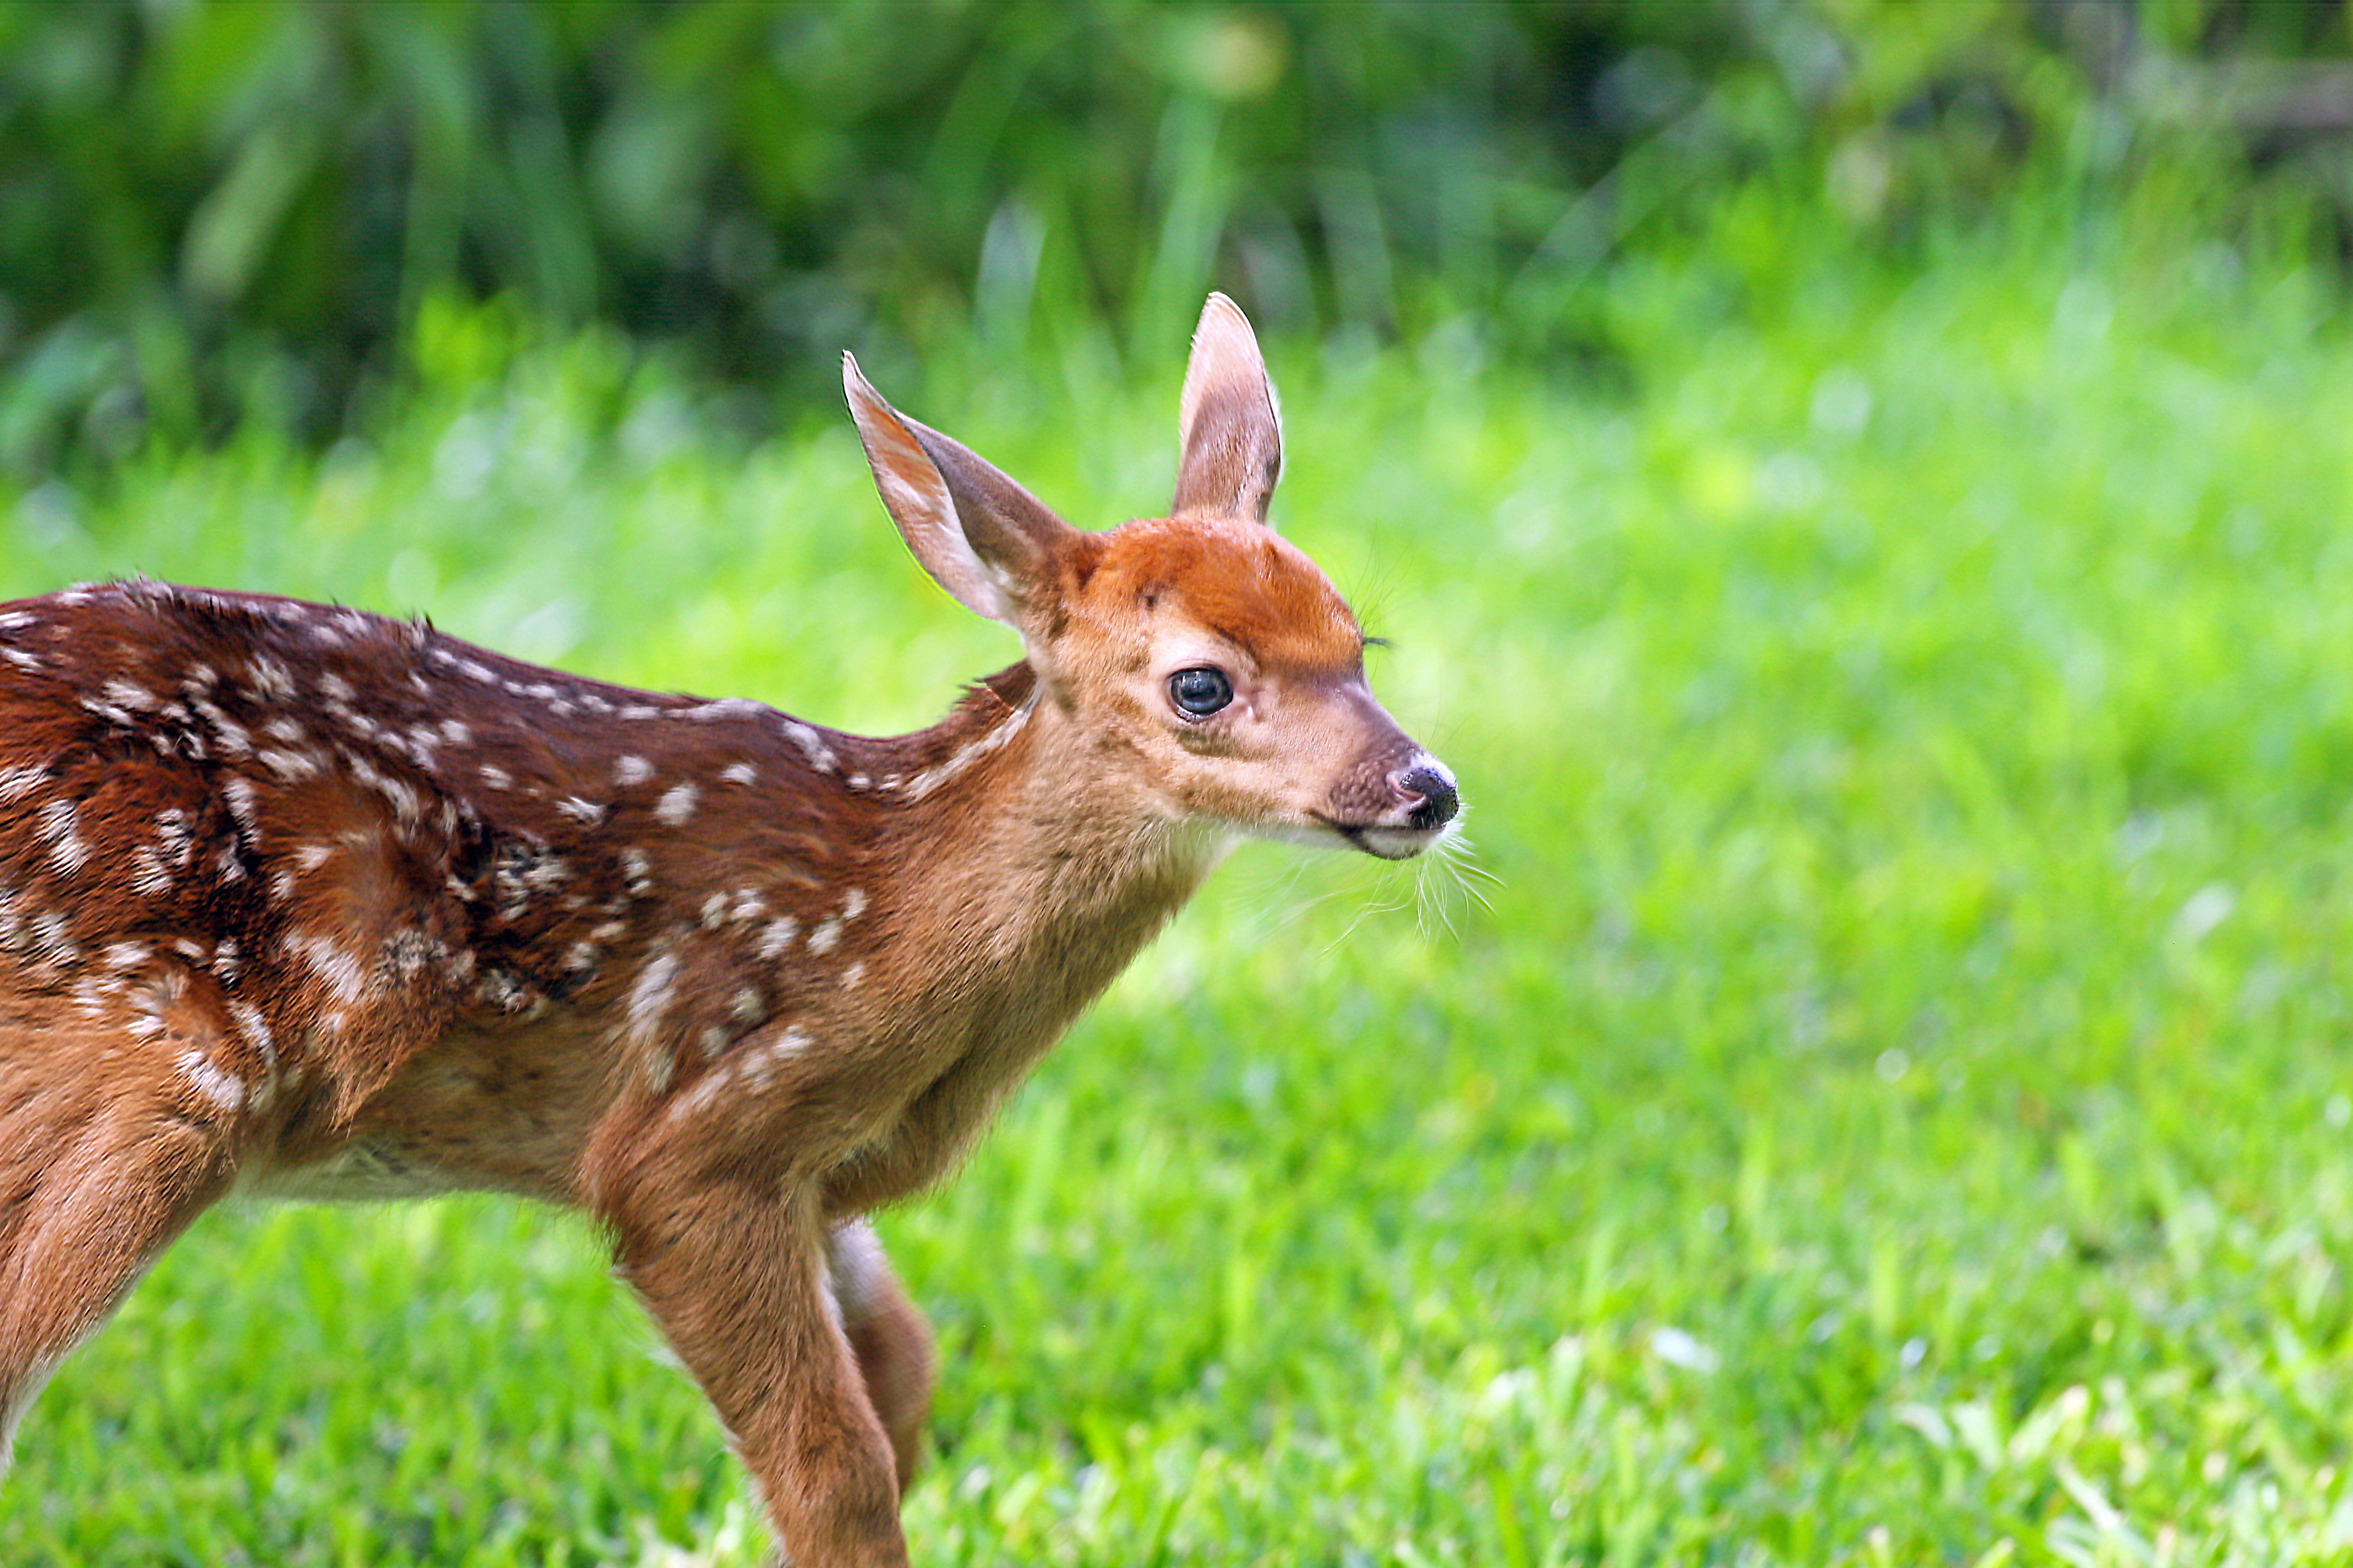 Baby deer photo